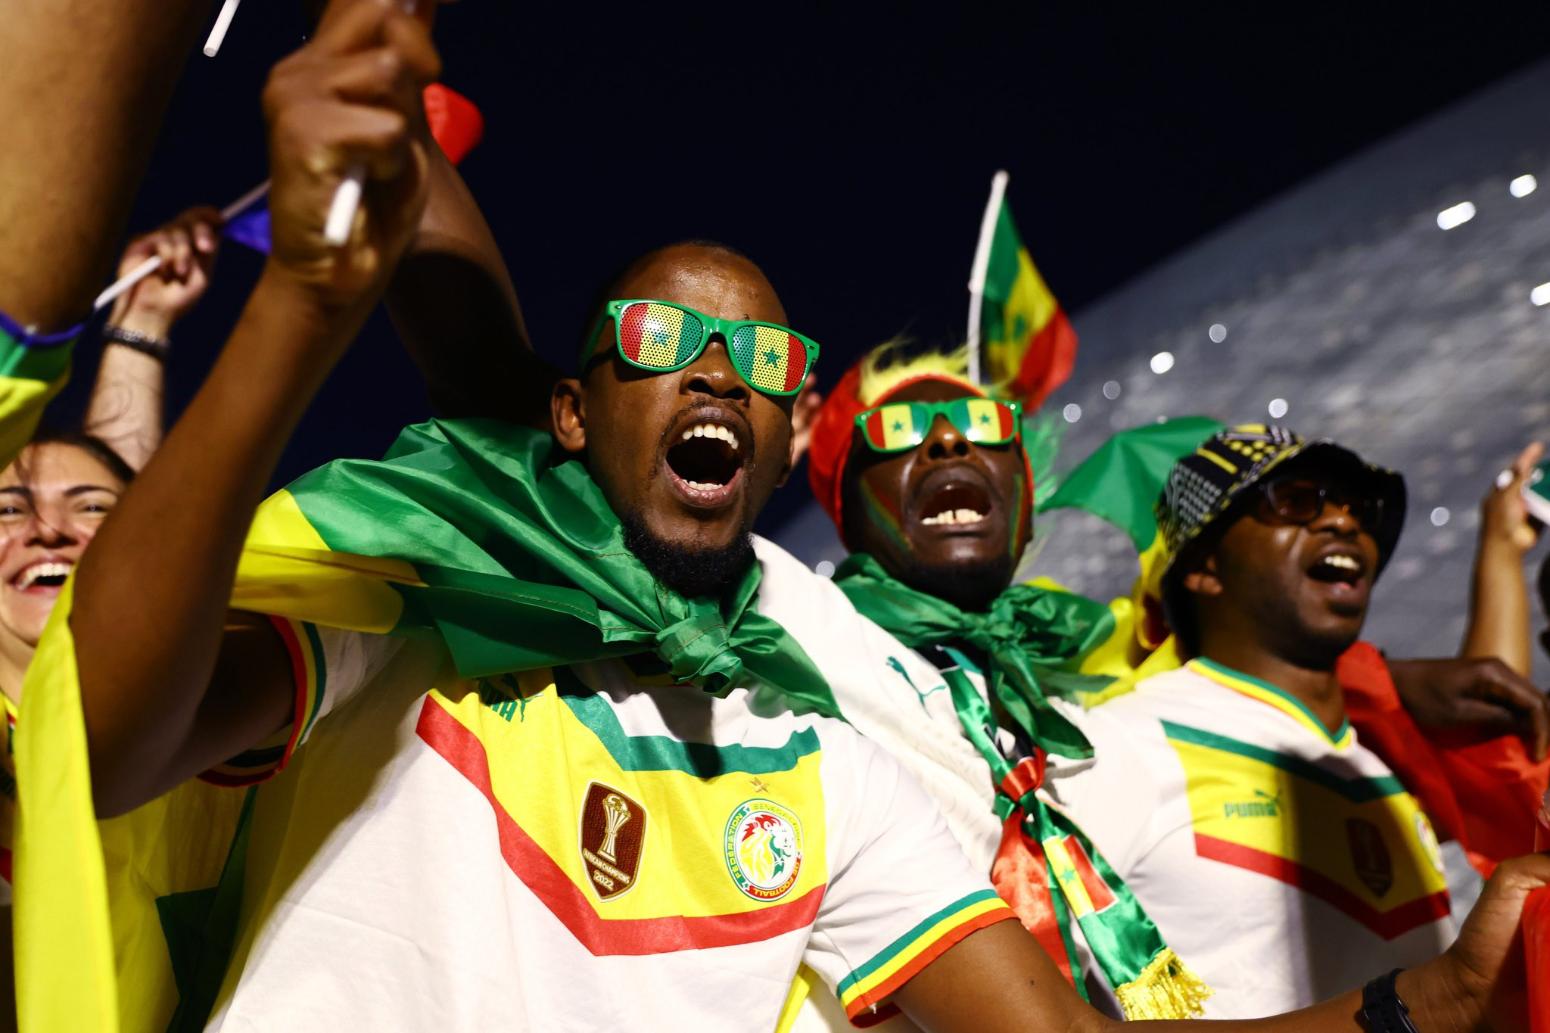 Μουντιάλ 2022: Ρεσιτάλ από τους οπαδούς της Σενεγάλης στις κερκίδες (ΦΩΤΟ)